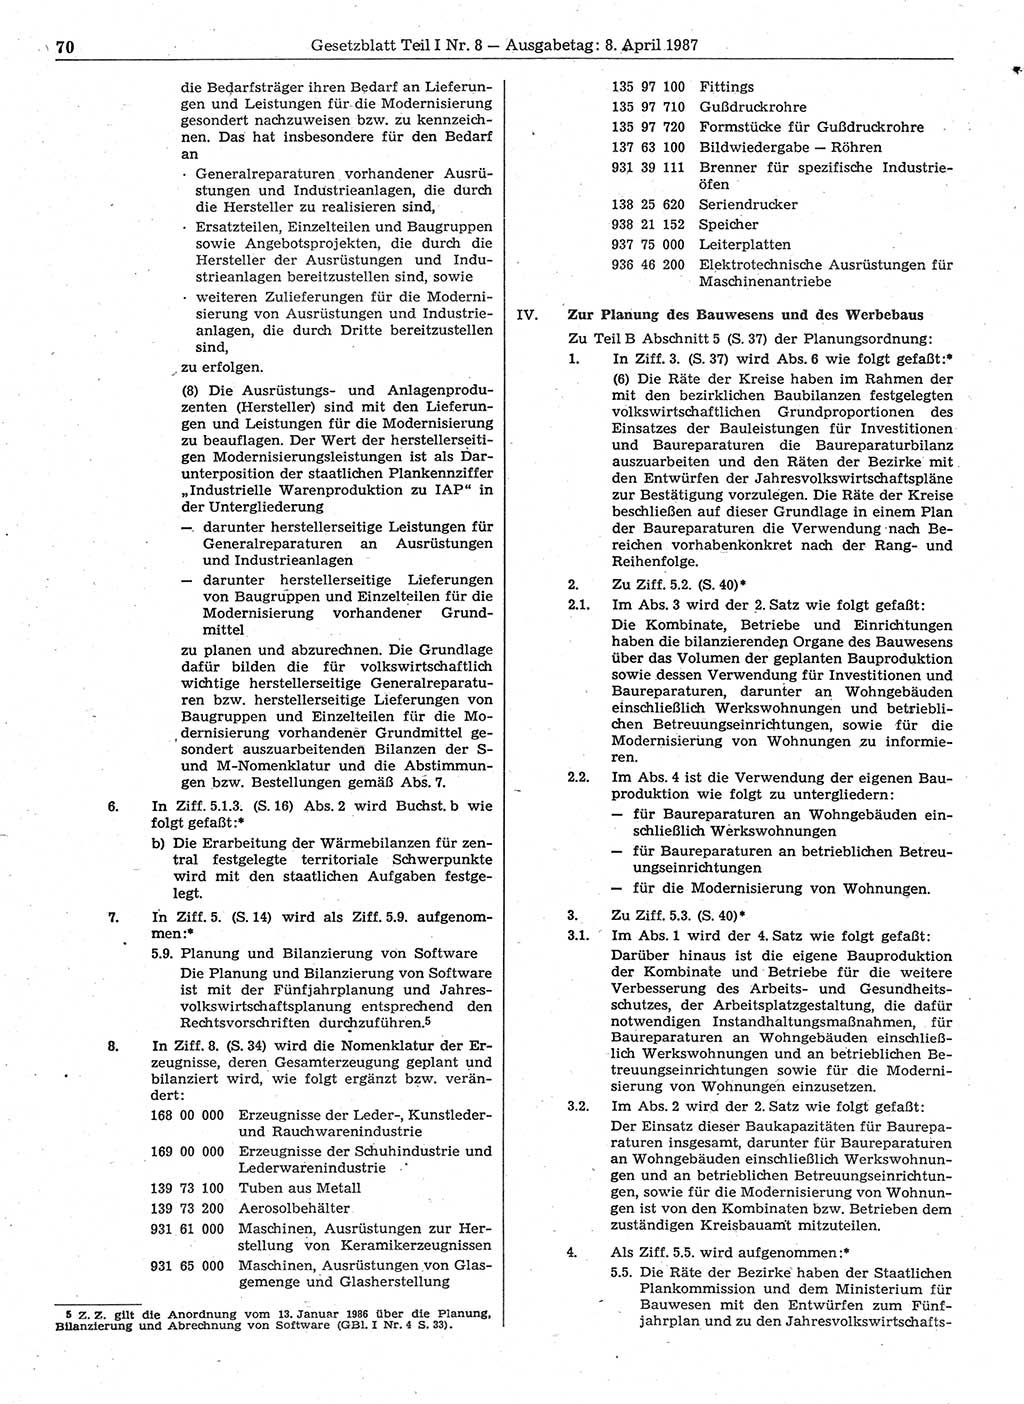 Gesetzblatt (GBl.) der Deutschen Demokratischen Republik (DDR) Teil Ⅰ 1987, Seite 70 (GBl. DDR Ⅰ 1987, S. 70)